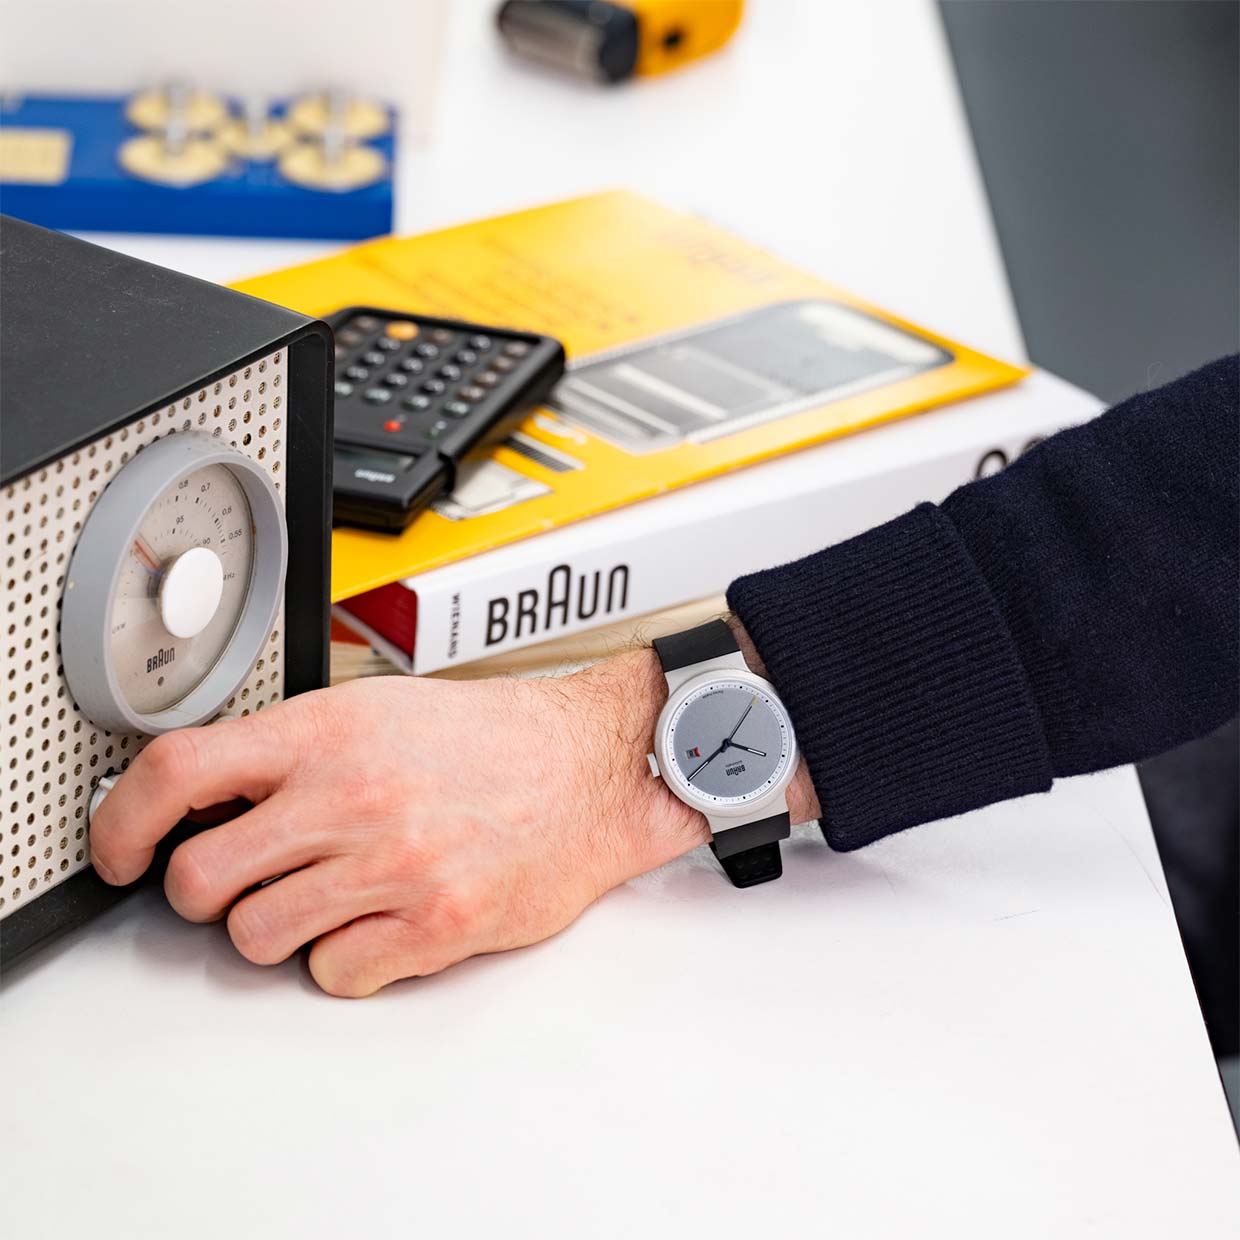 Braun x Hodinkee BN0279 Watch